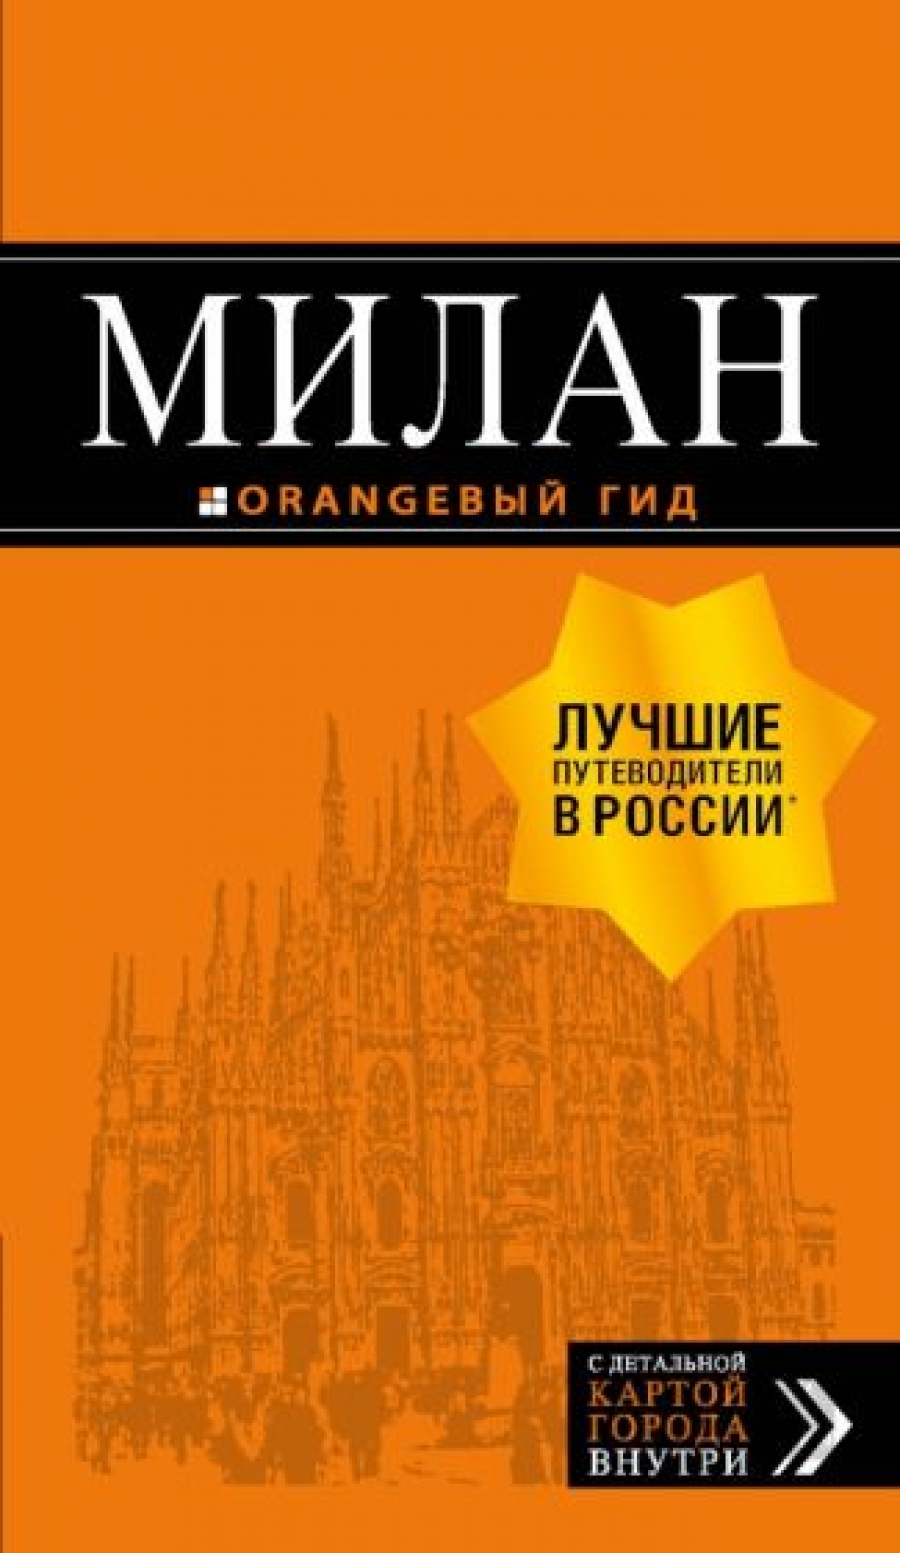 Тимофеев И.В. Милан: путеводитель+карта. 7-е изд., испр. и доп. 